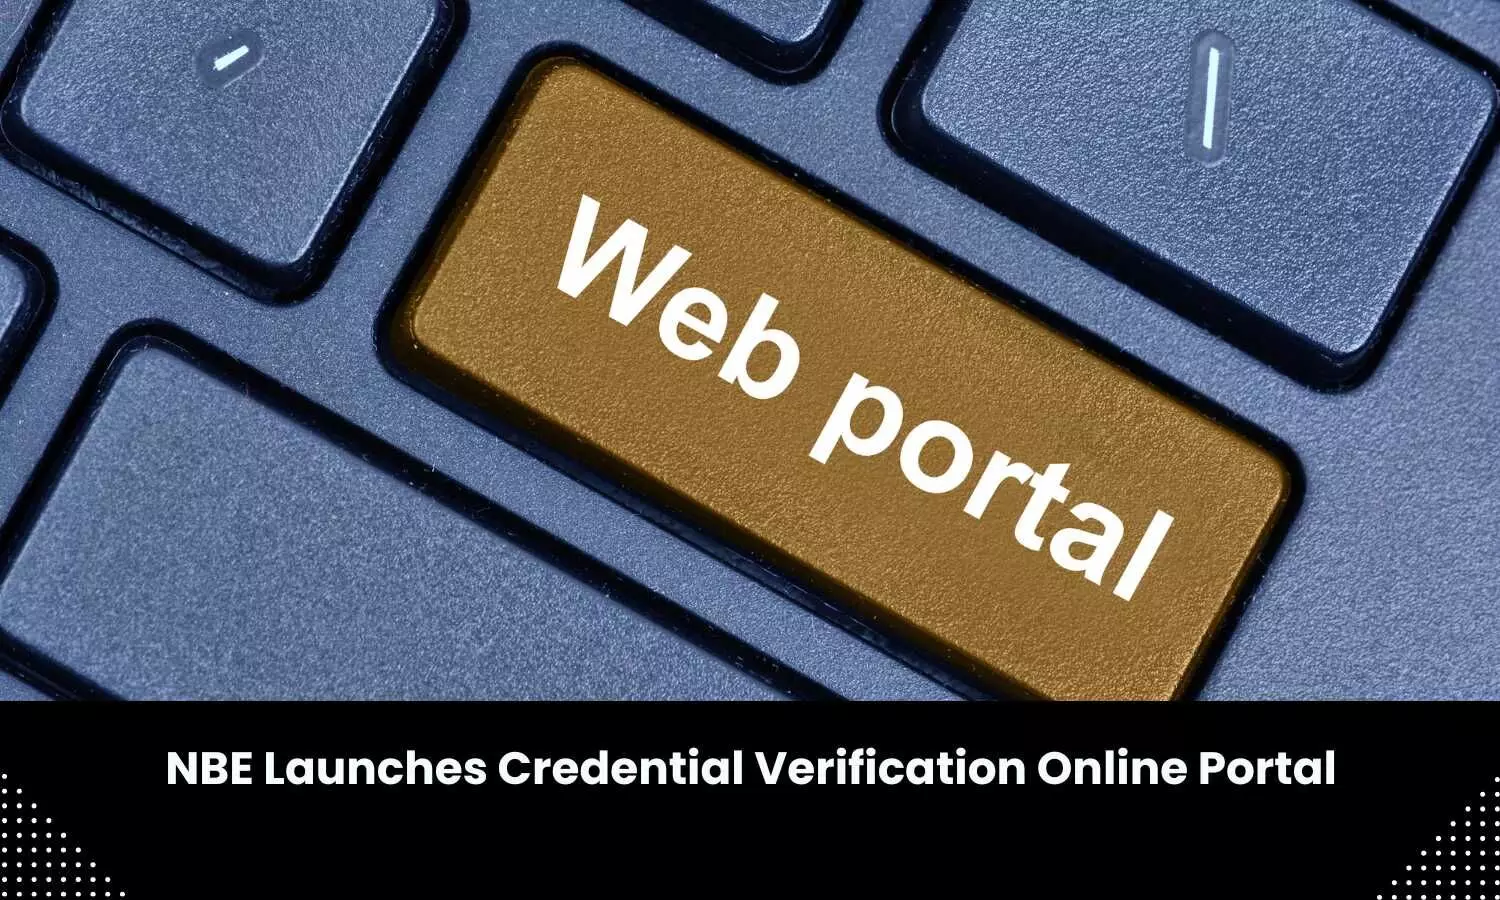 NBE unveils Credential Verification Online Portal